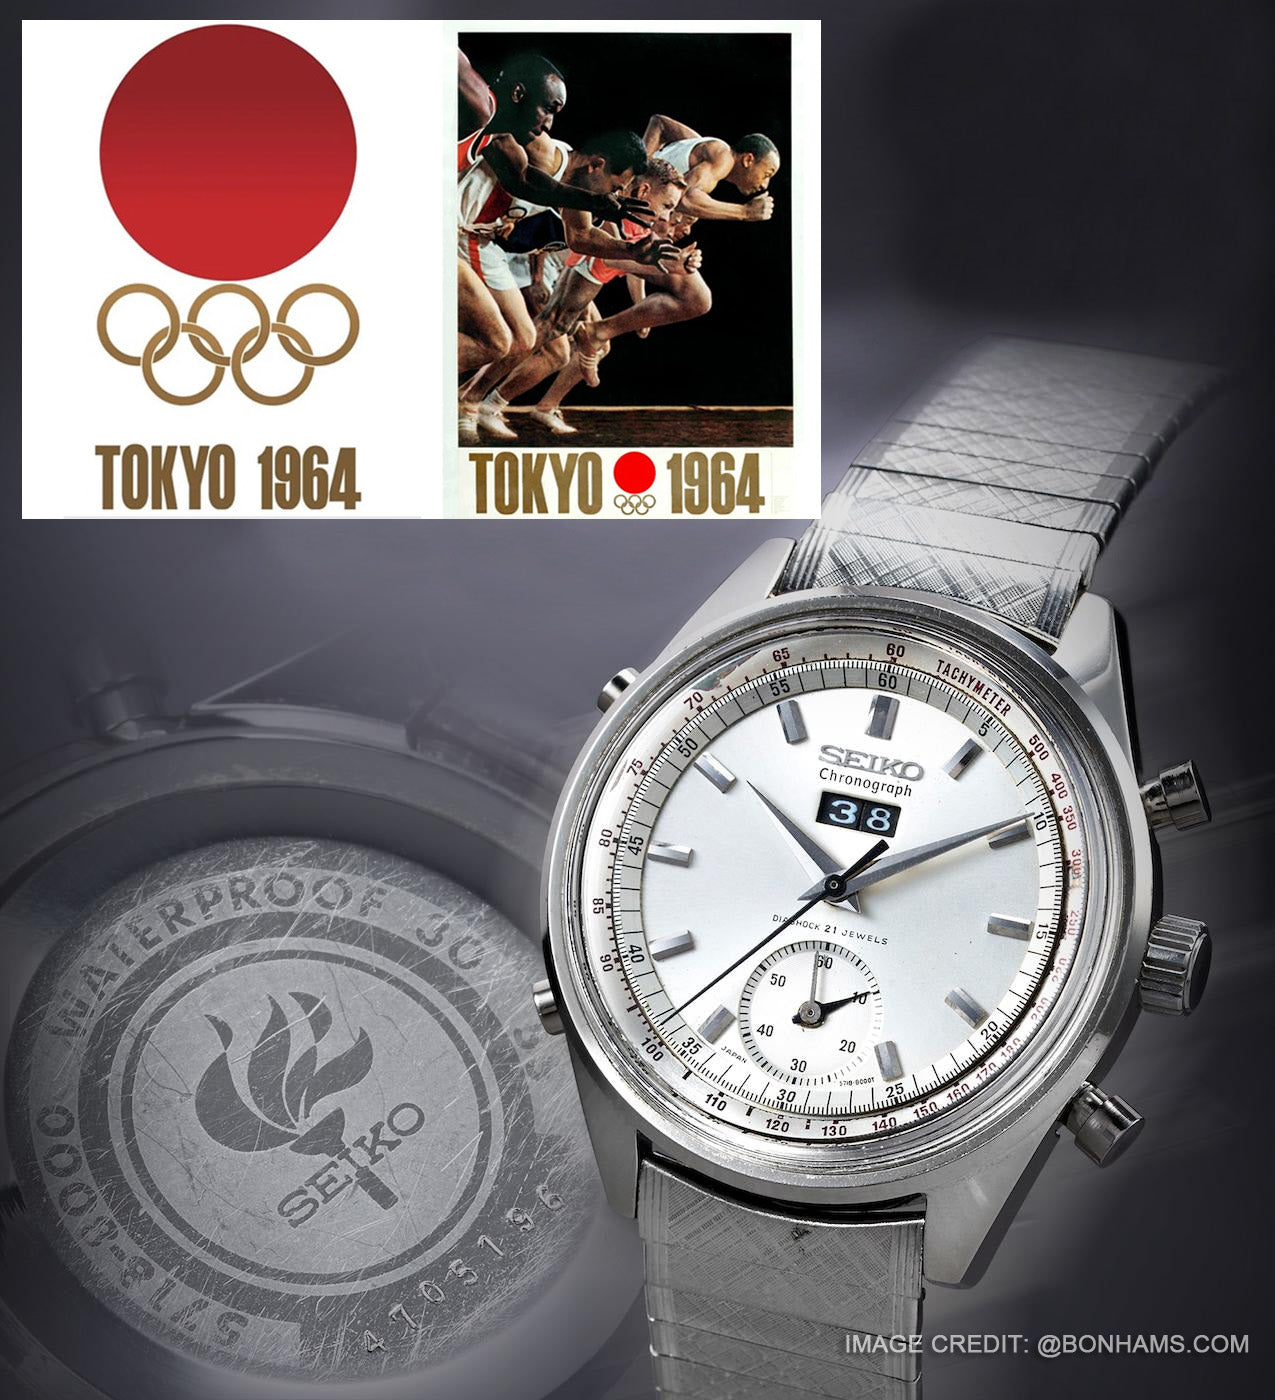 精工 5718-8000 東京夏季奧運會 1964 計時碼錶型號